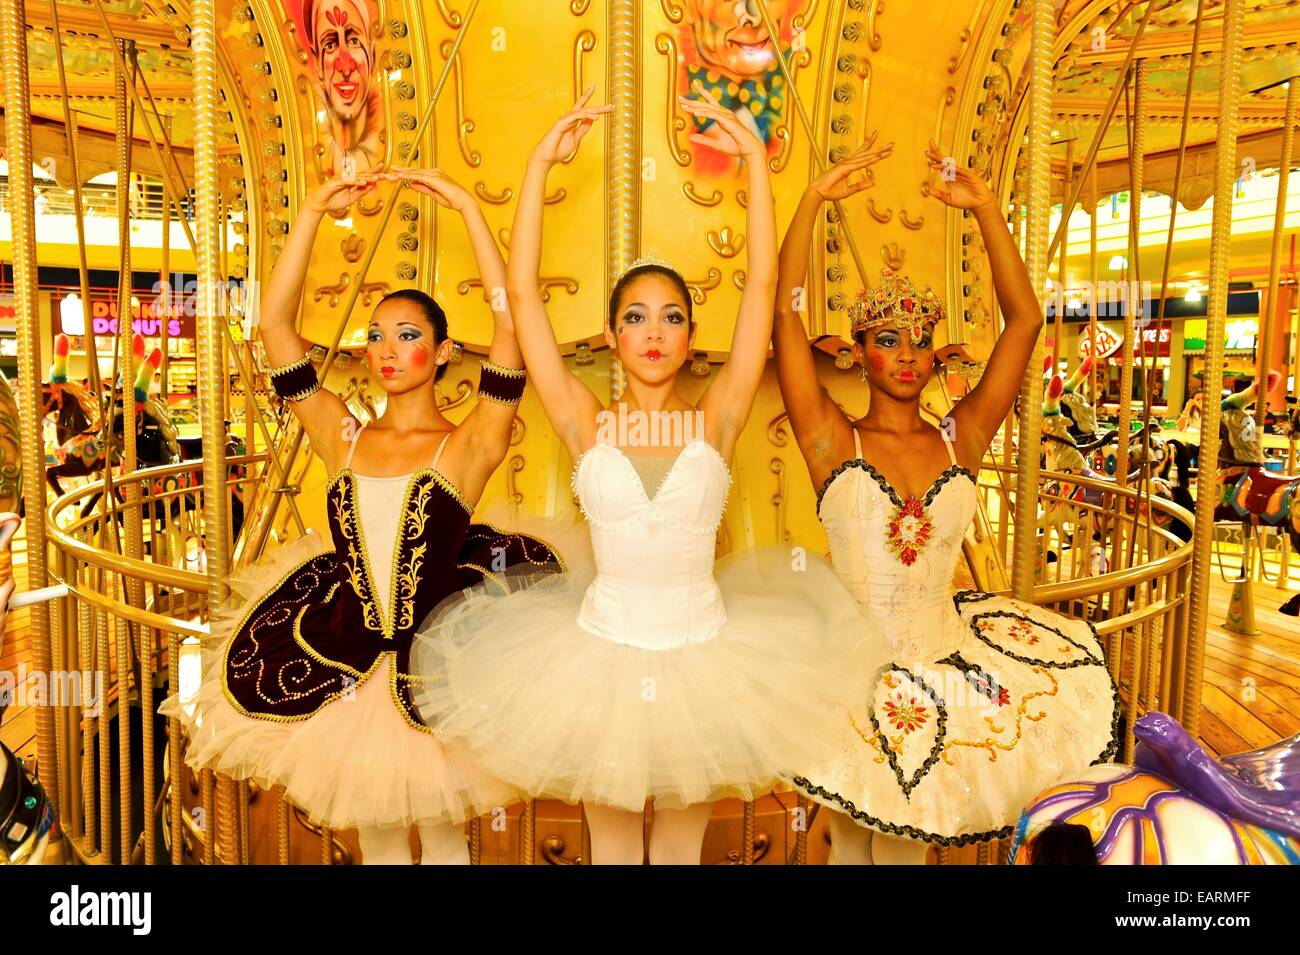 Les danseurs du Ballet national du Panama se font passer pour des poupées à un merry go round. Banque D'Images